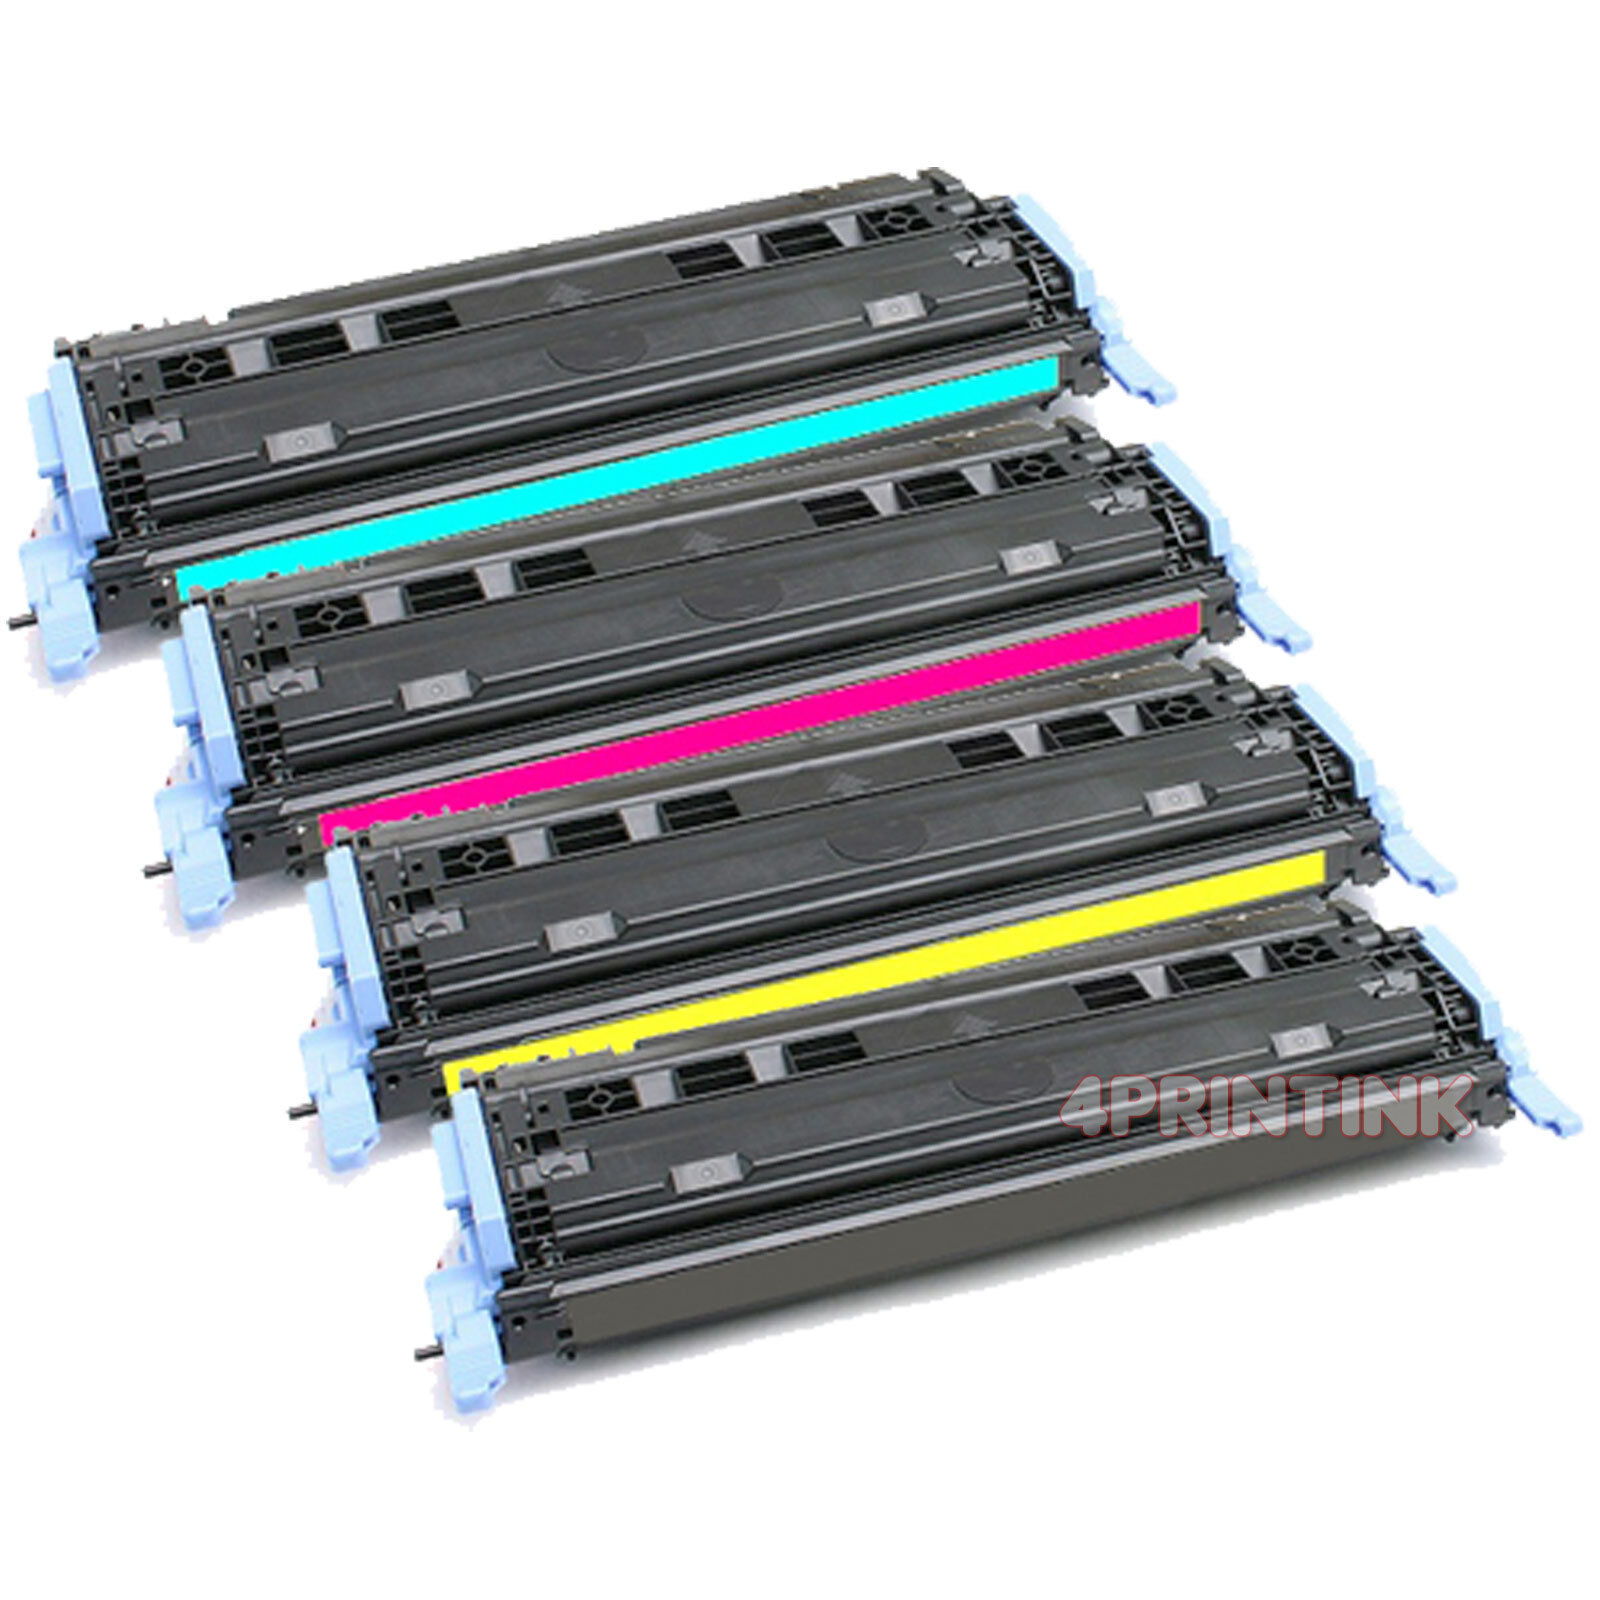 4 Pack Q6000A-Q6003A Toner For HP Color LaserJet 1600 2600 2605dn 2605dtn